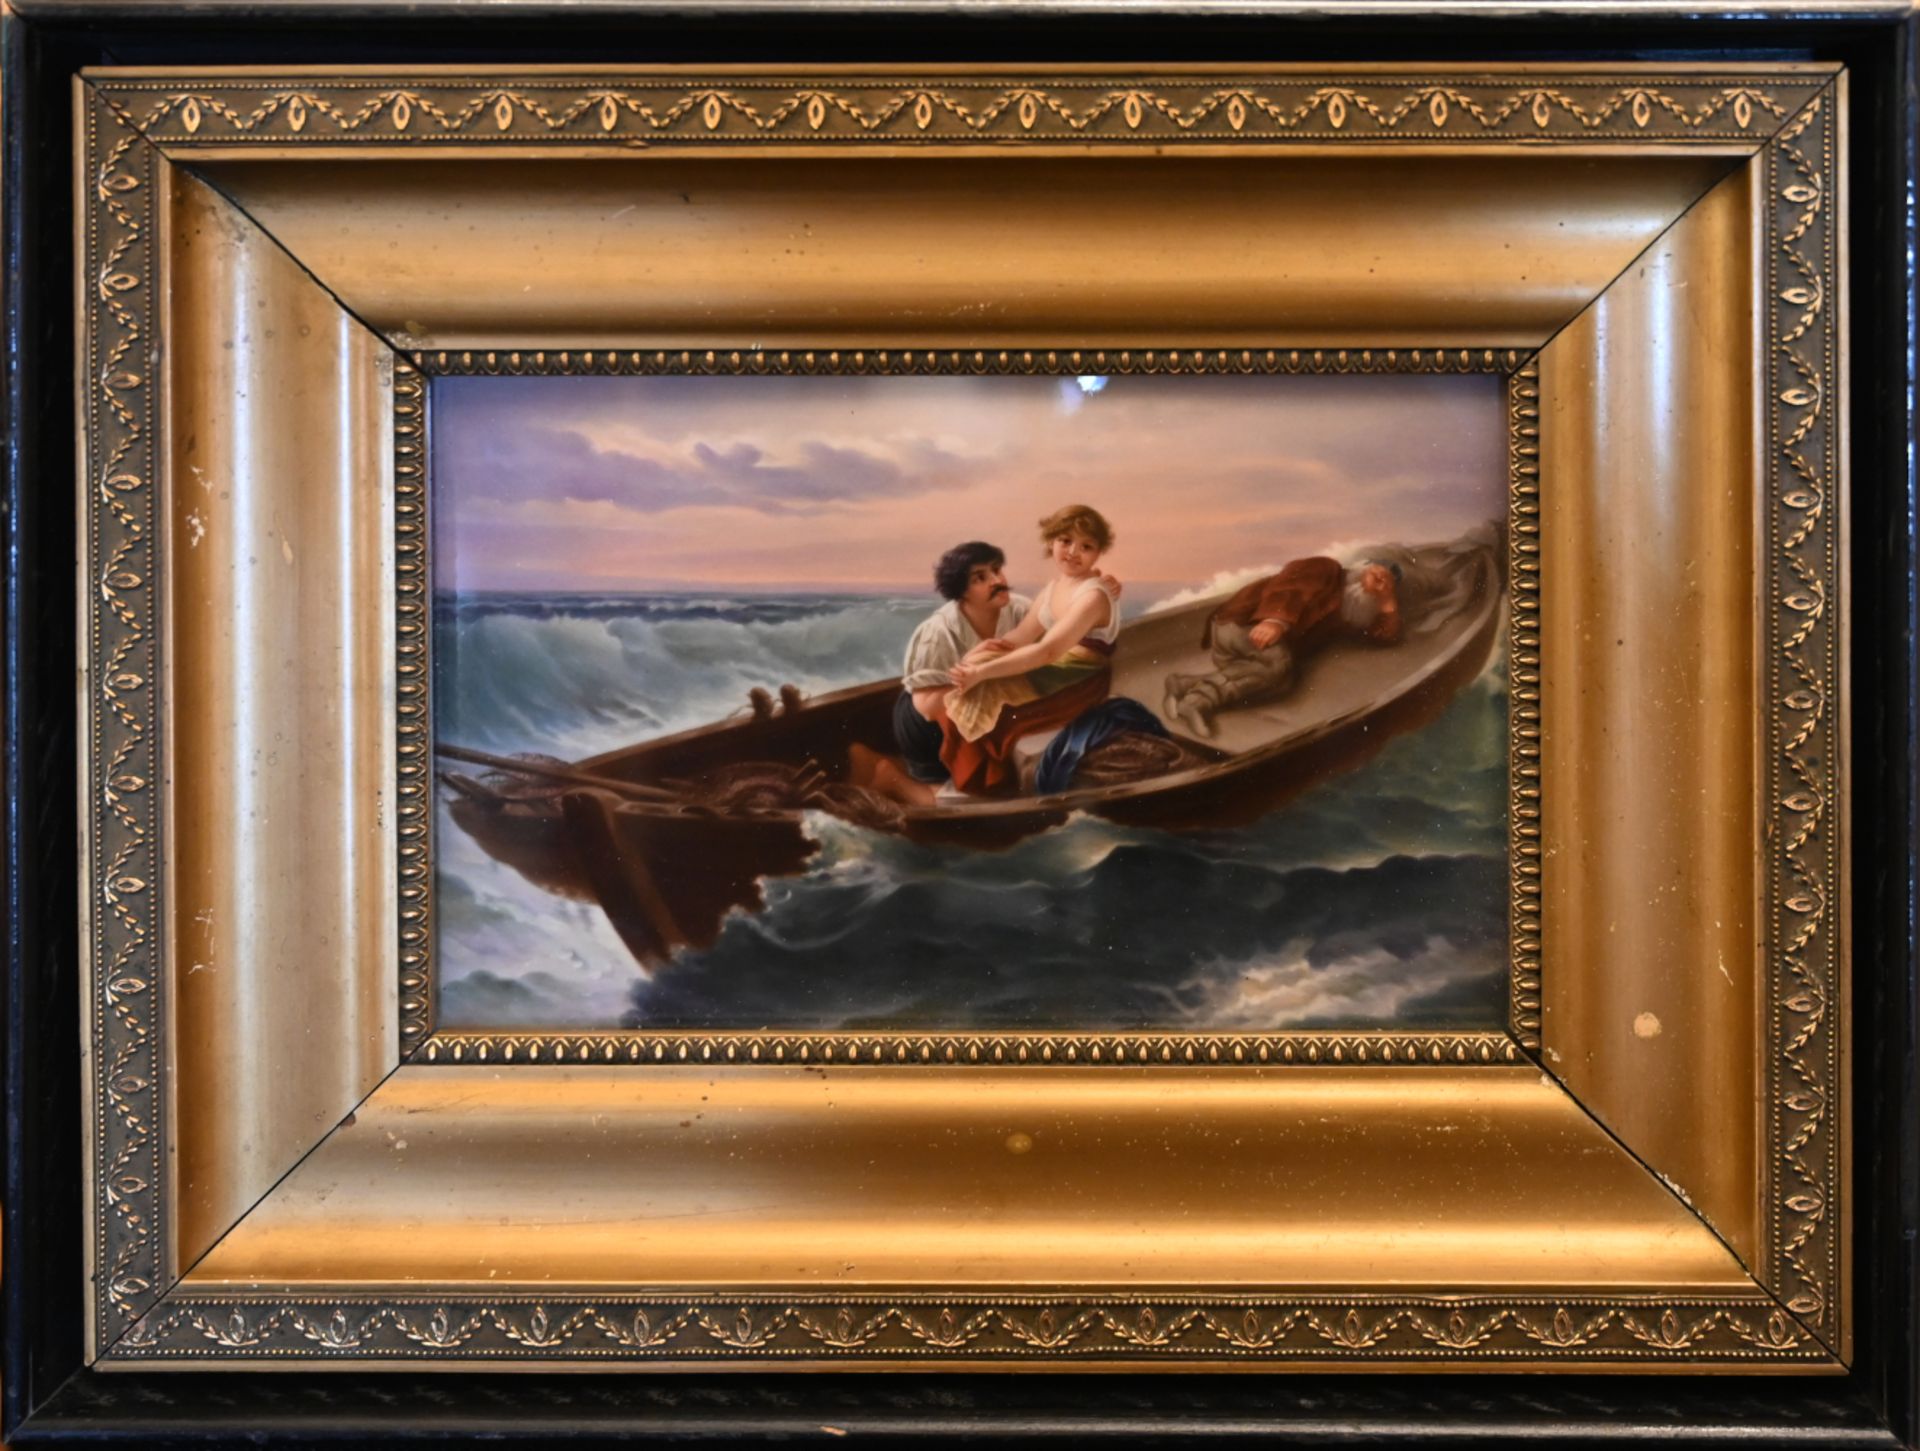 1 Porzellanbild unsign./Kopie nach Wilhelm KRAY (wohl 1828-1889) "Des Meeres und der Liebe Wellen" - Image 2 of 3